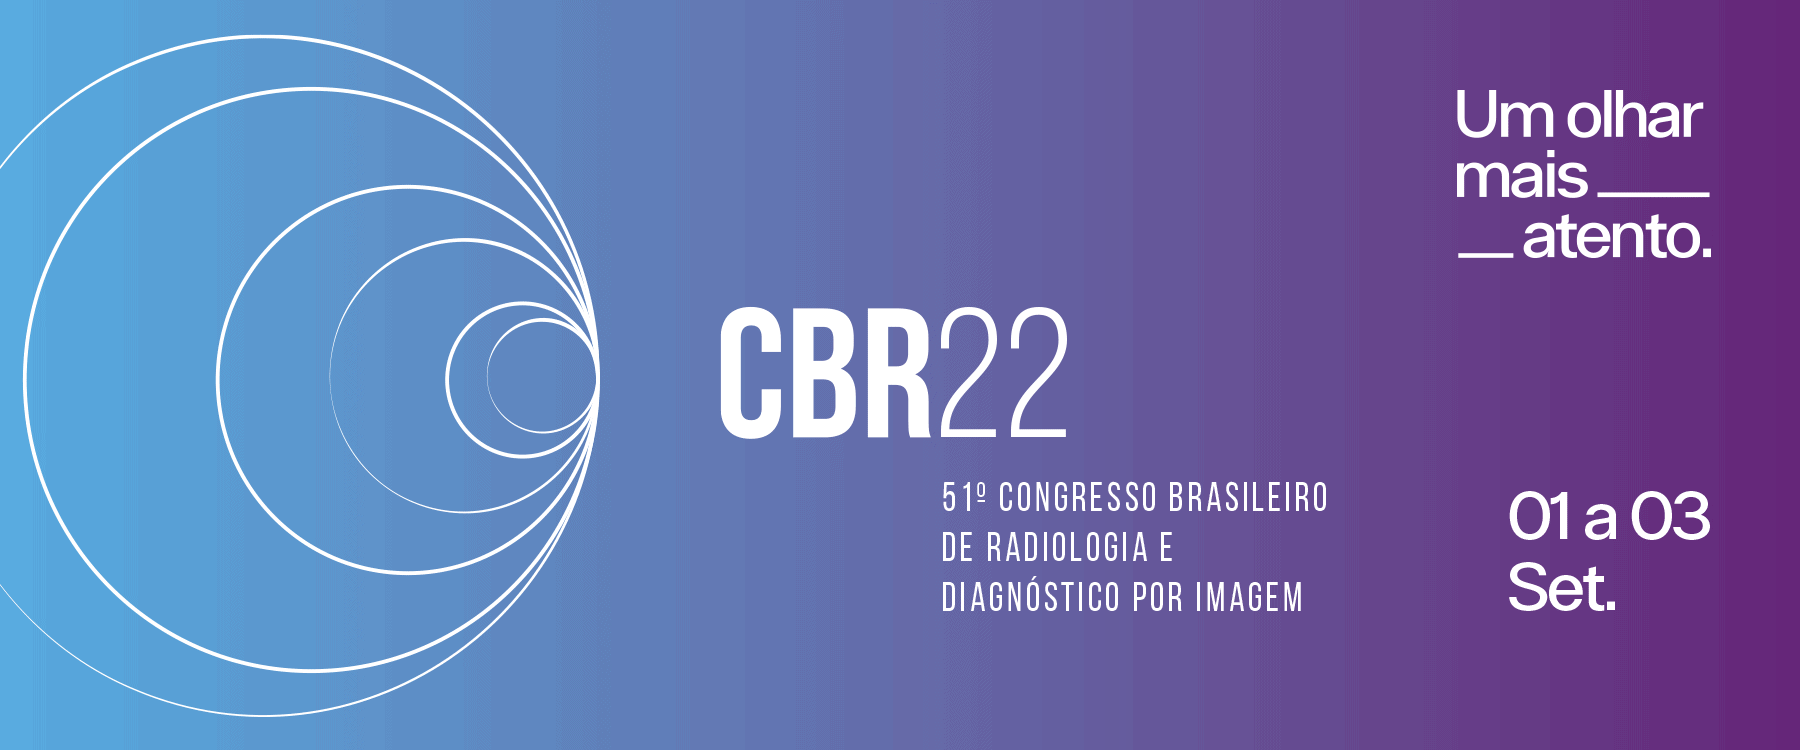 cbr22 congresso brasileiro de radiologia cbr 22